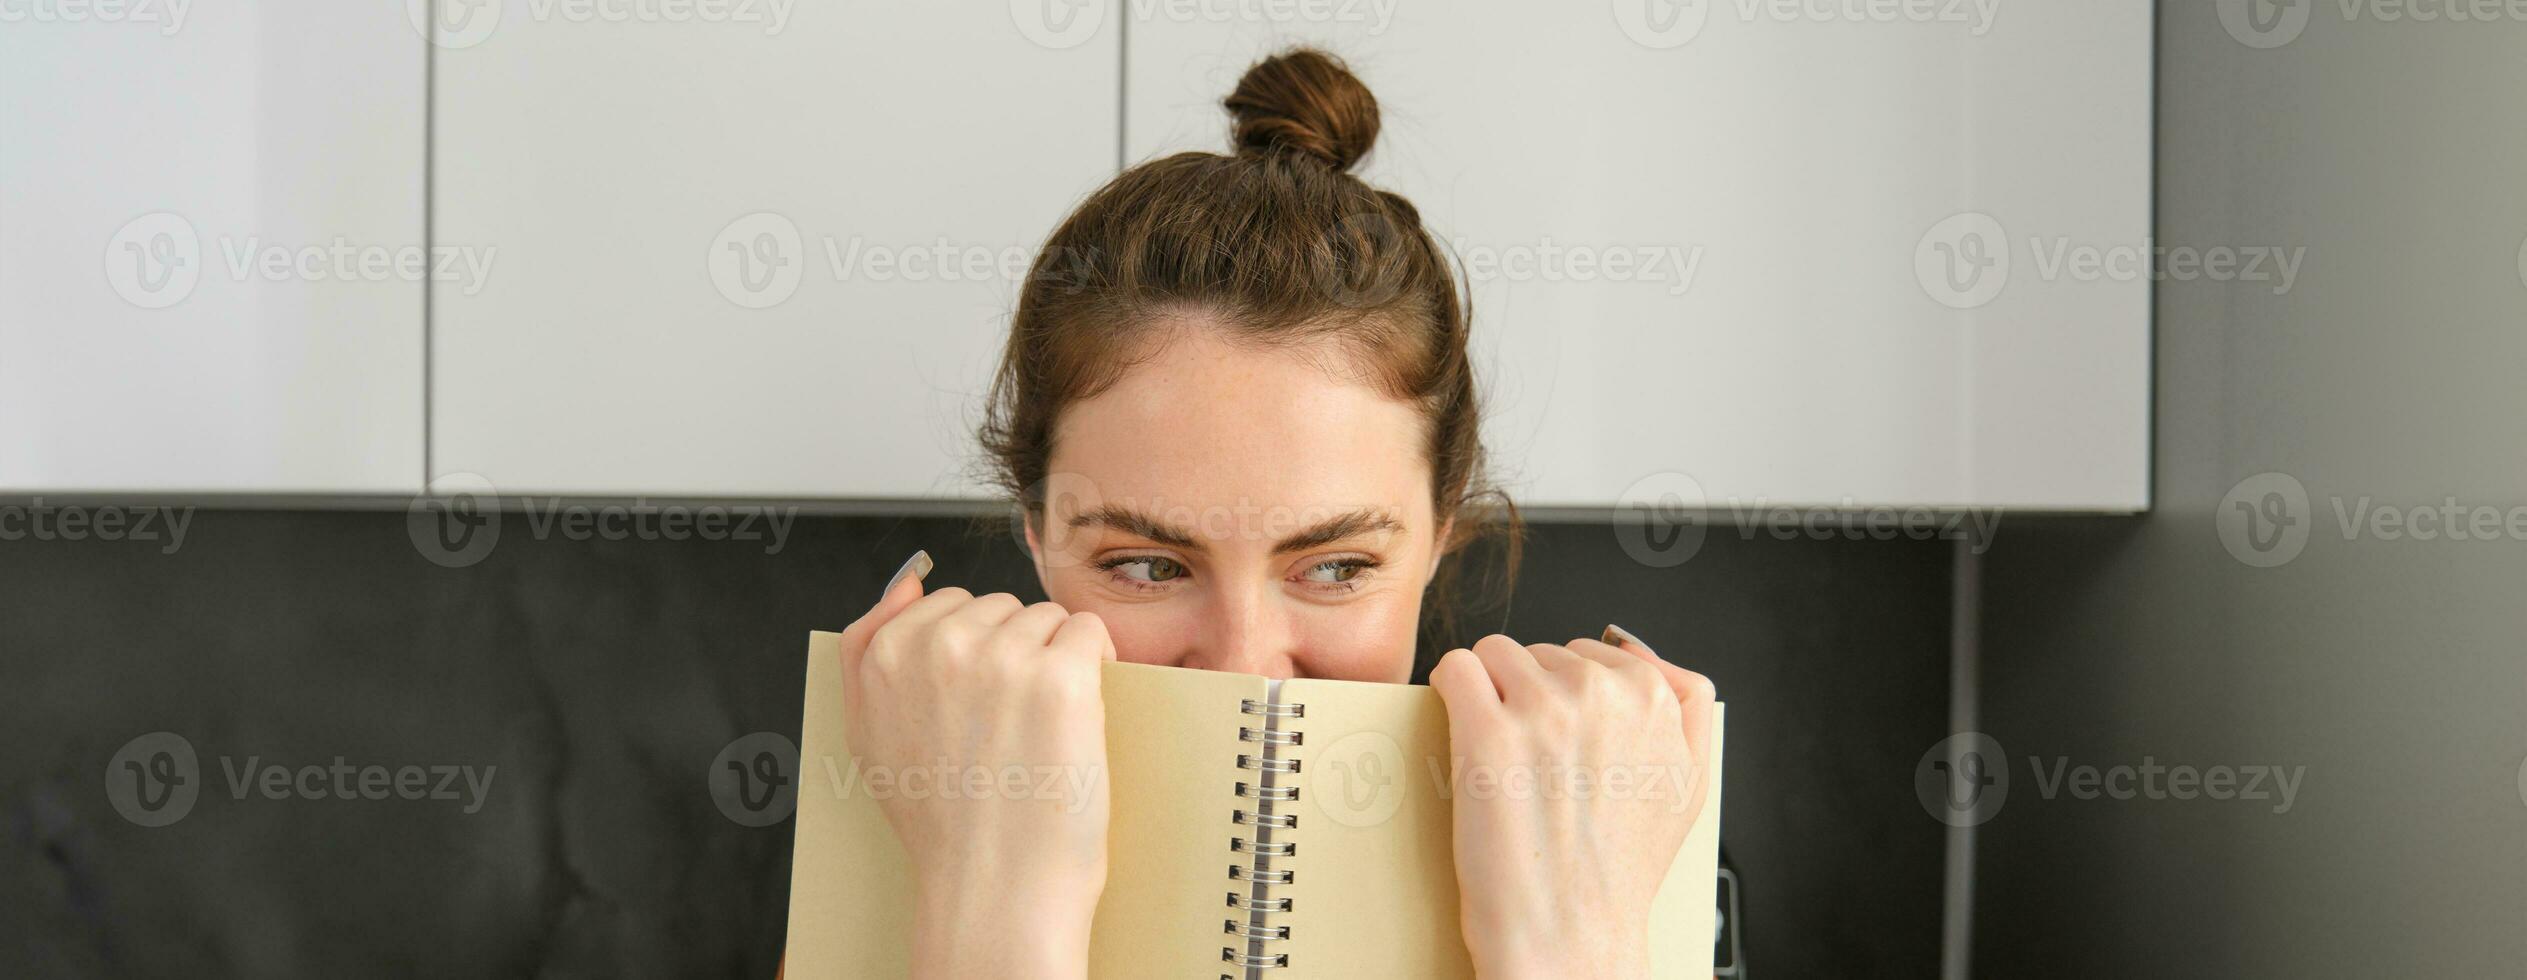 linda mujer se esconde cara detrás computadora portátil, mirando aparte, sonriente con ojos foto